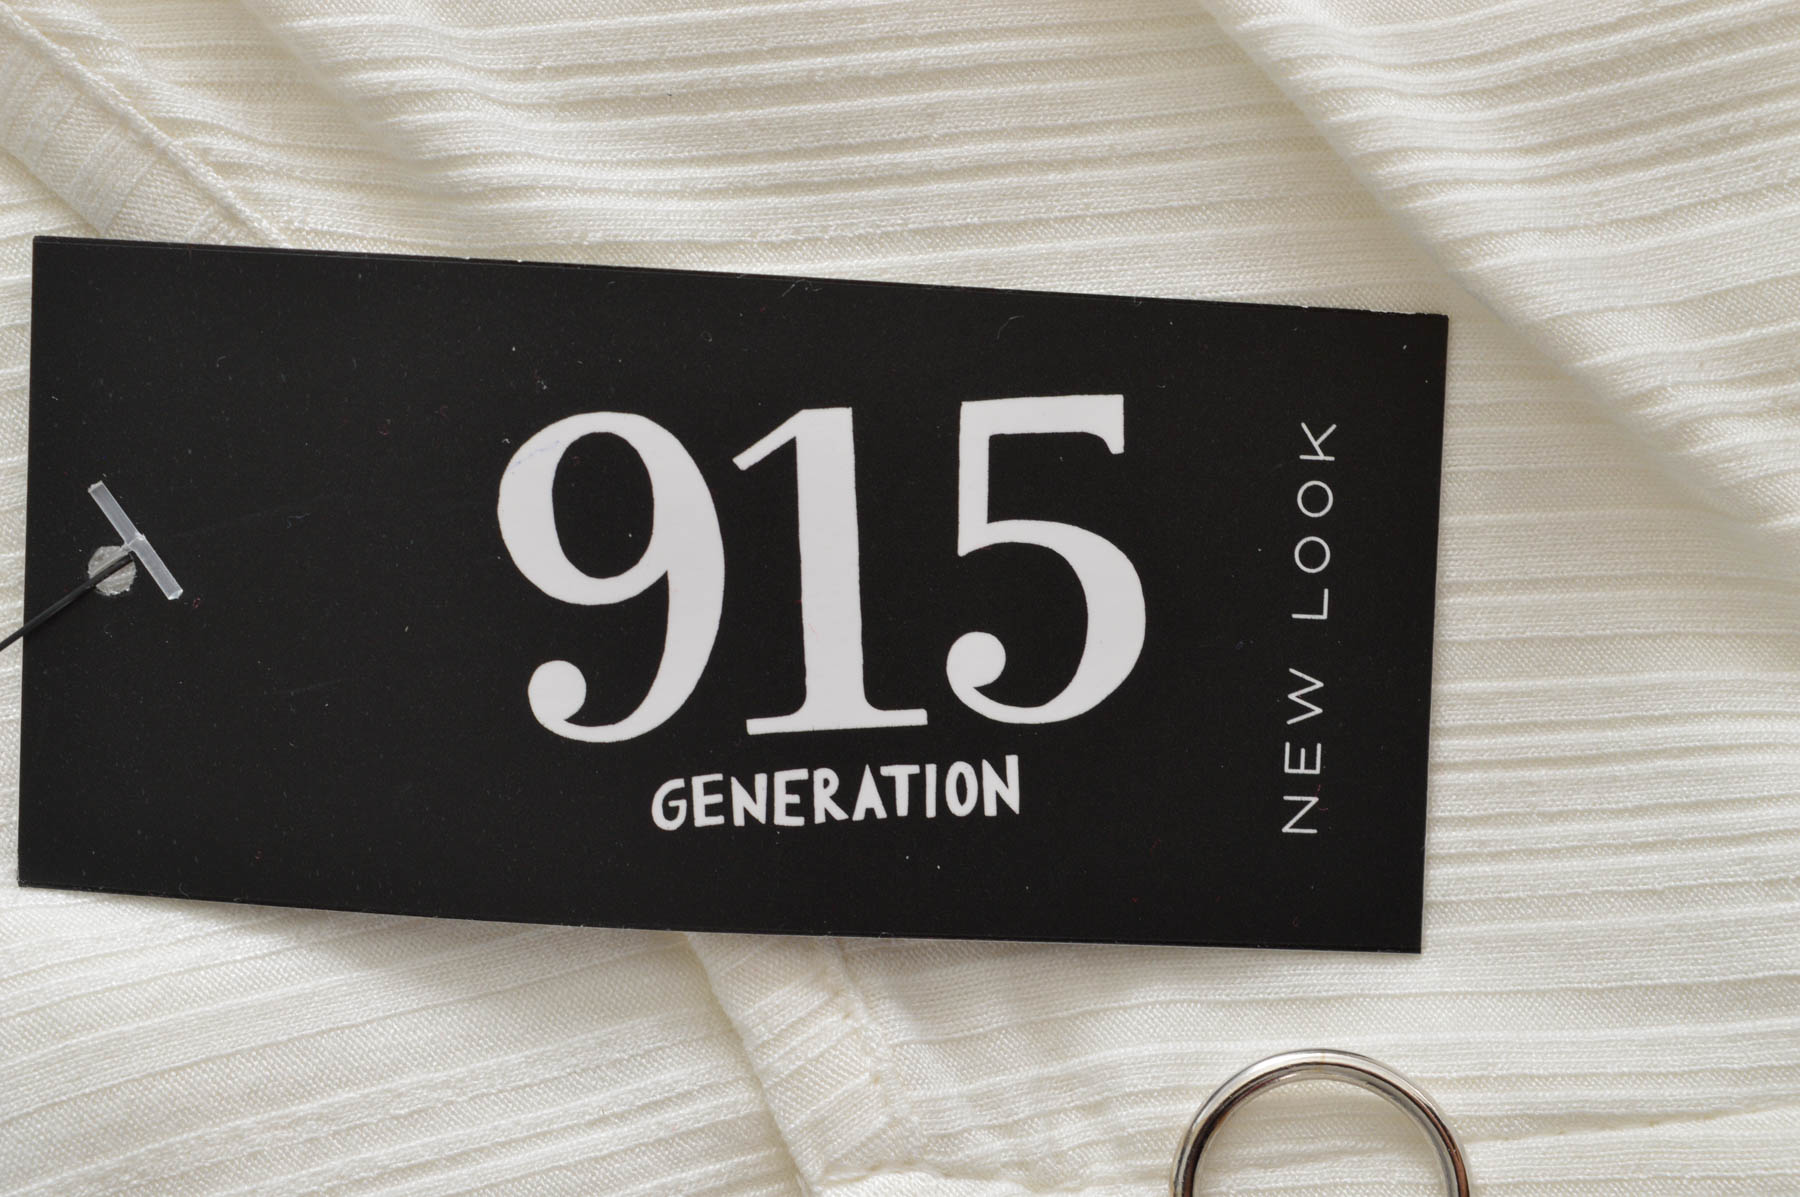 Μπλουζάκι για κορίτσι - New Look 915 Generation - 2